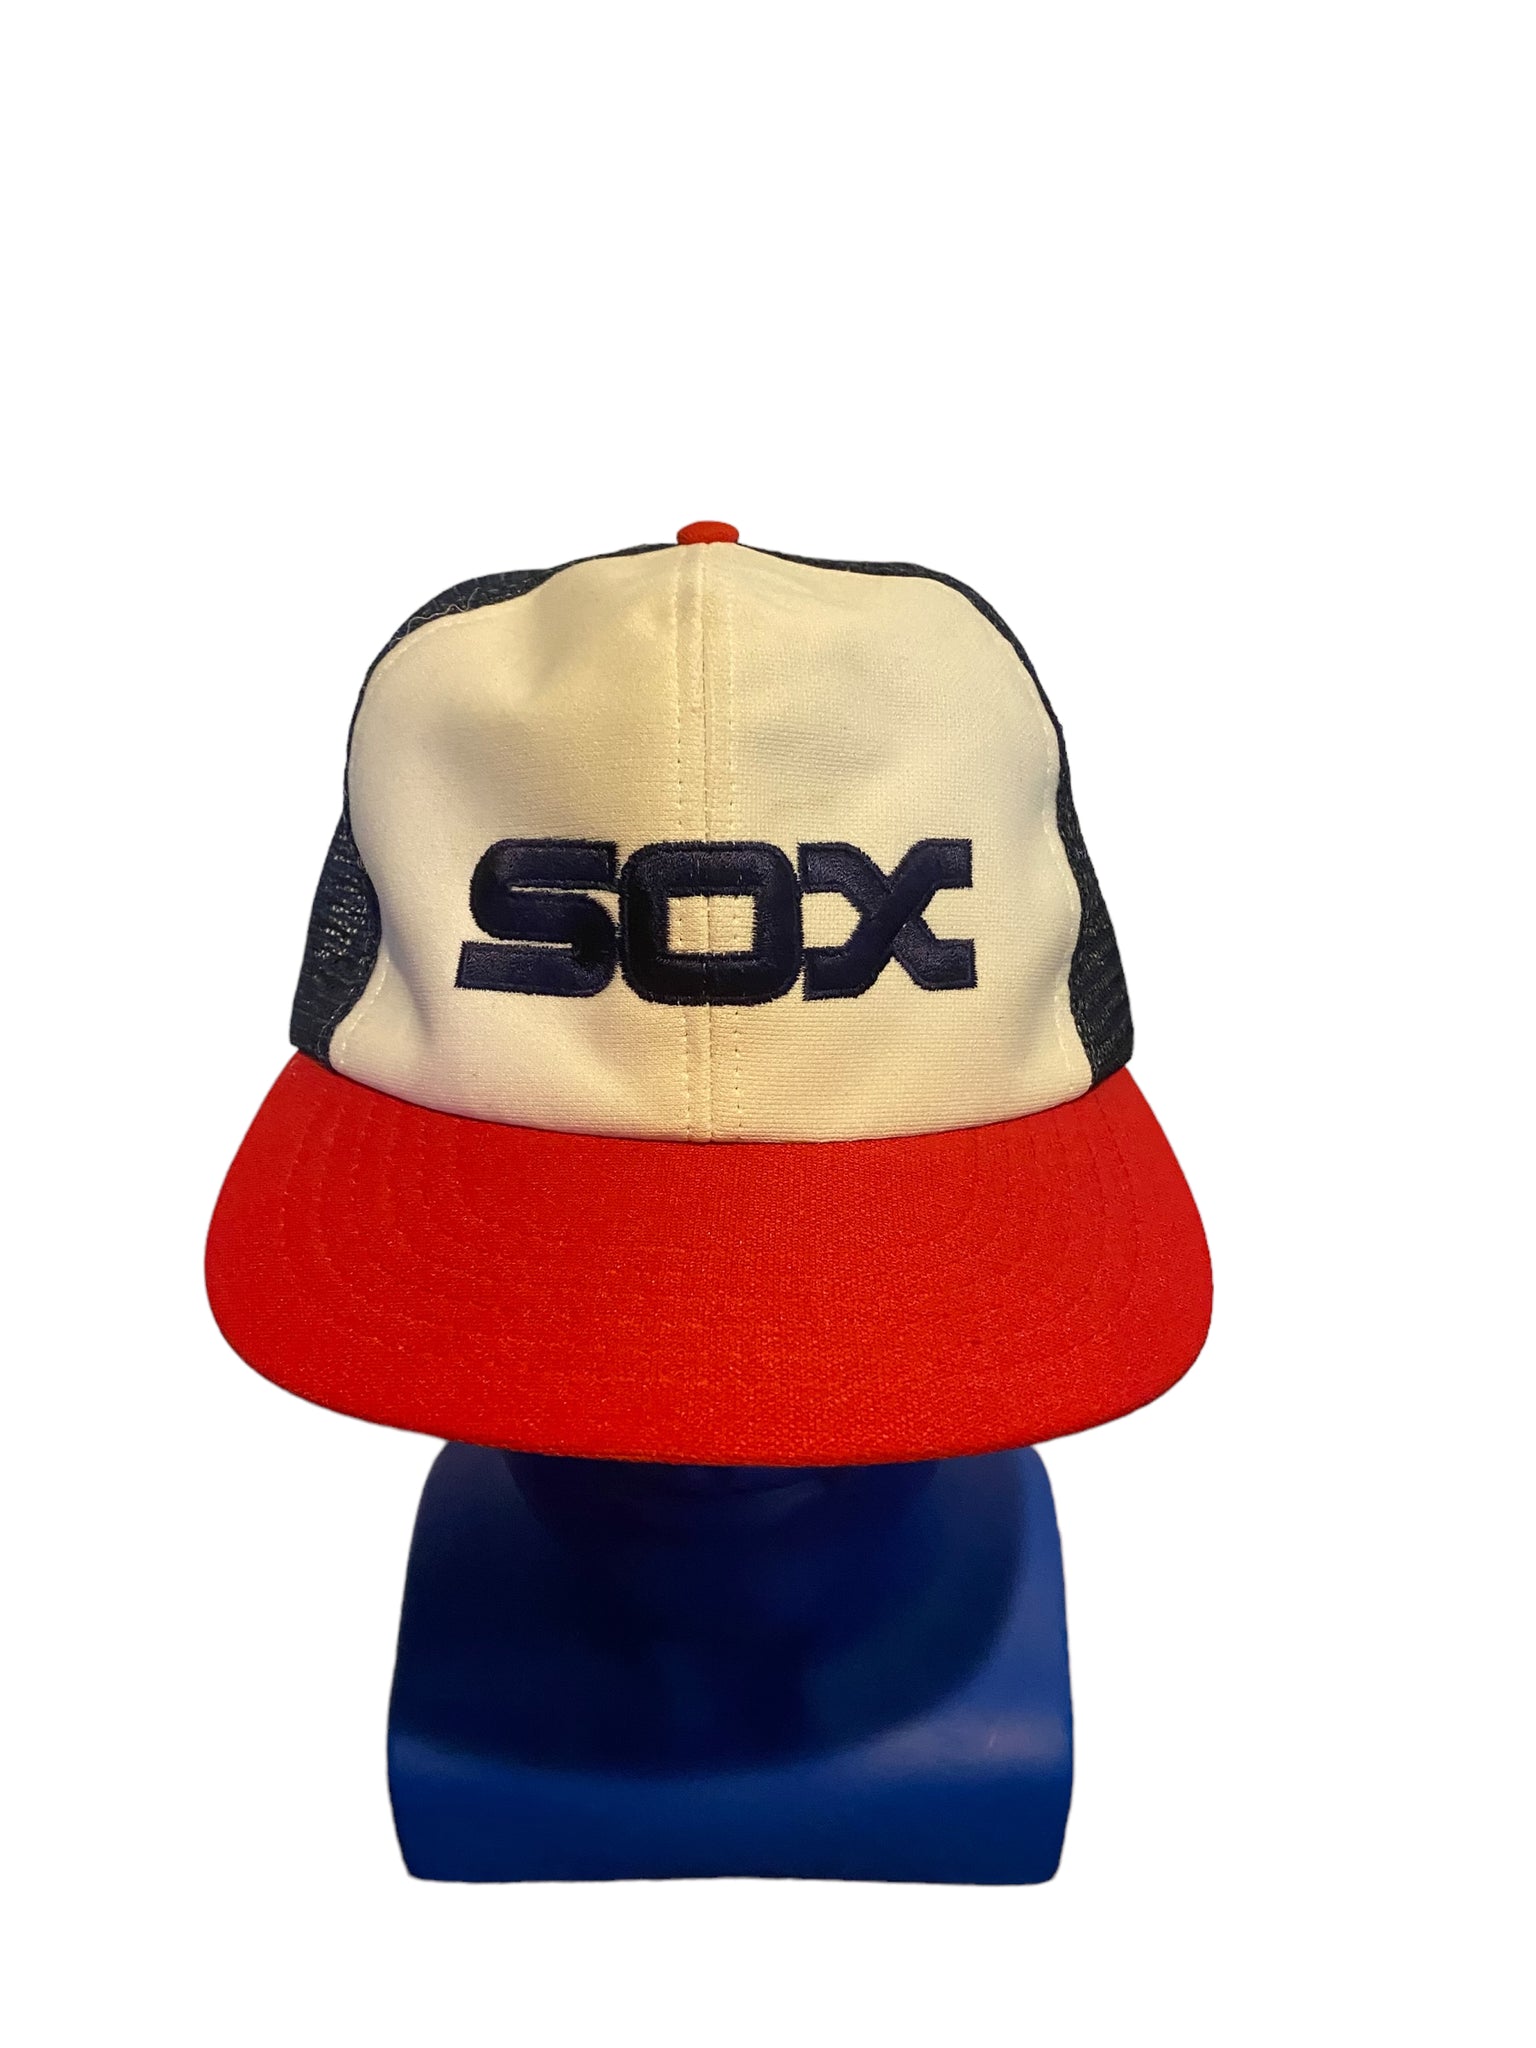 Vtg Chicago White Sox Baseball Hat Cap Red White Blue SnapBack Block Letters